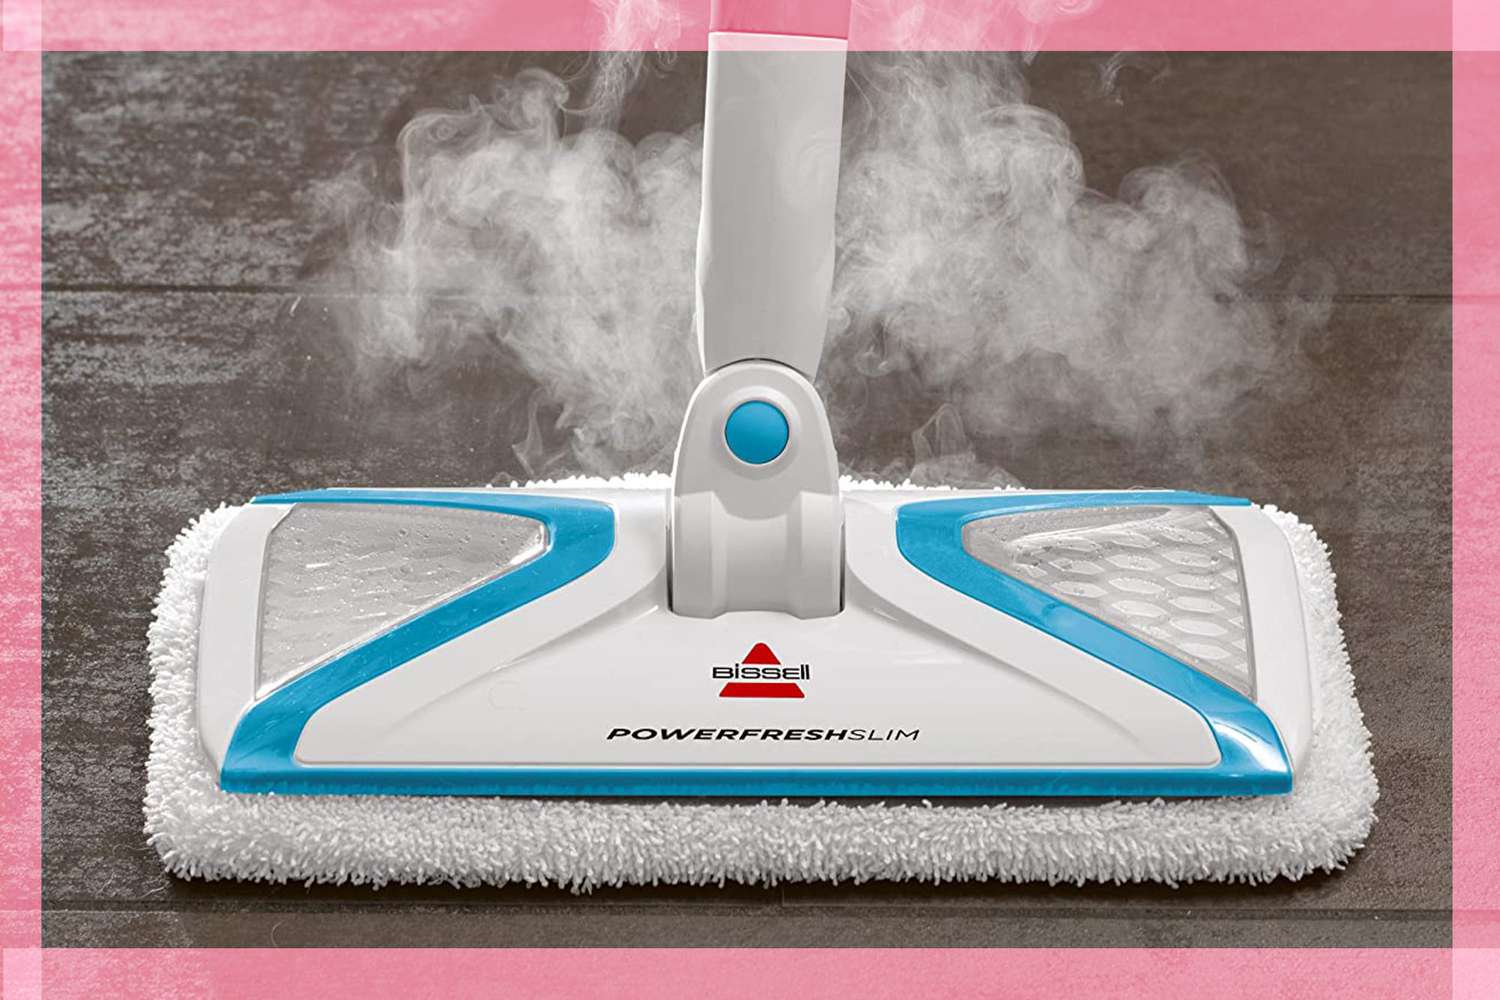 ผู้ซื้อของ Amazon บอกว่า Bissell Steam Mop นี้ทำความสะอาด 'Like Magic' และลดราคา